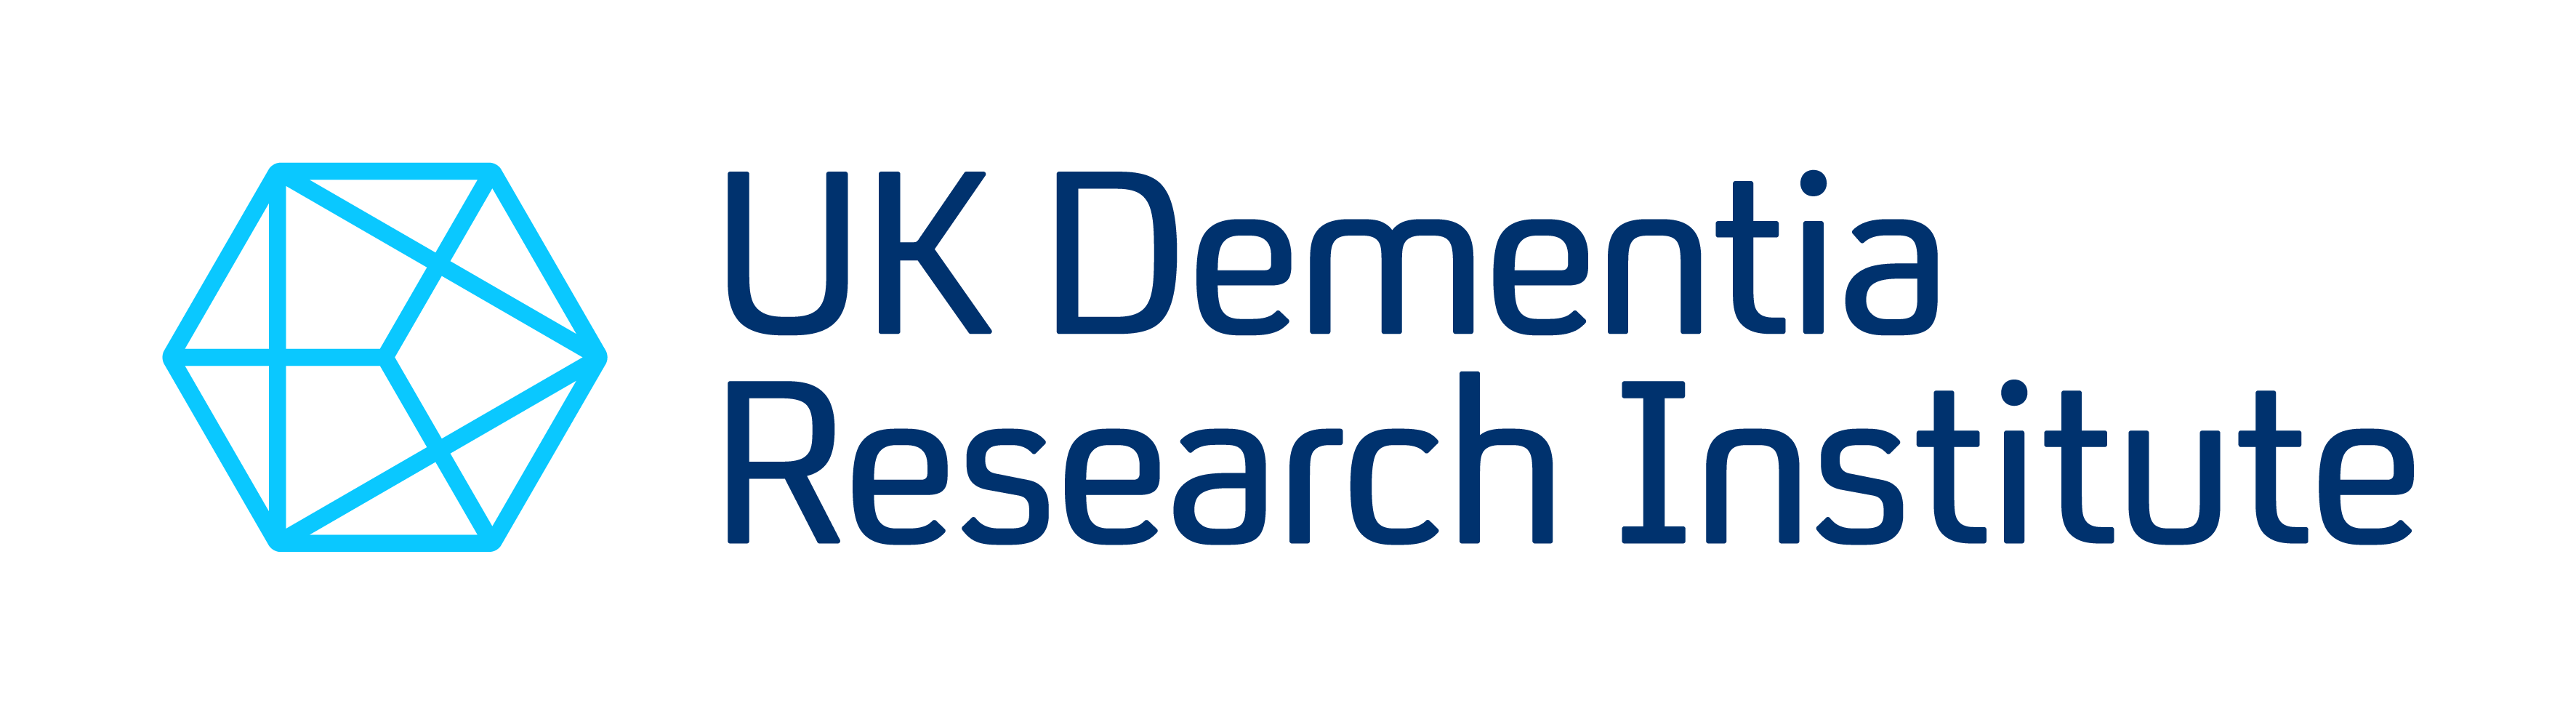 UK Dementia Research Institute_LOGO_RGB UKDRI